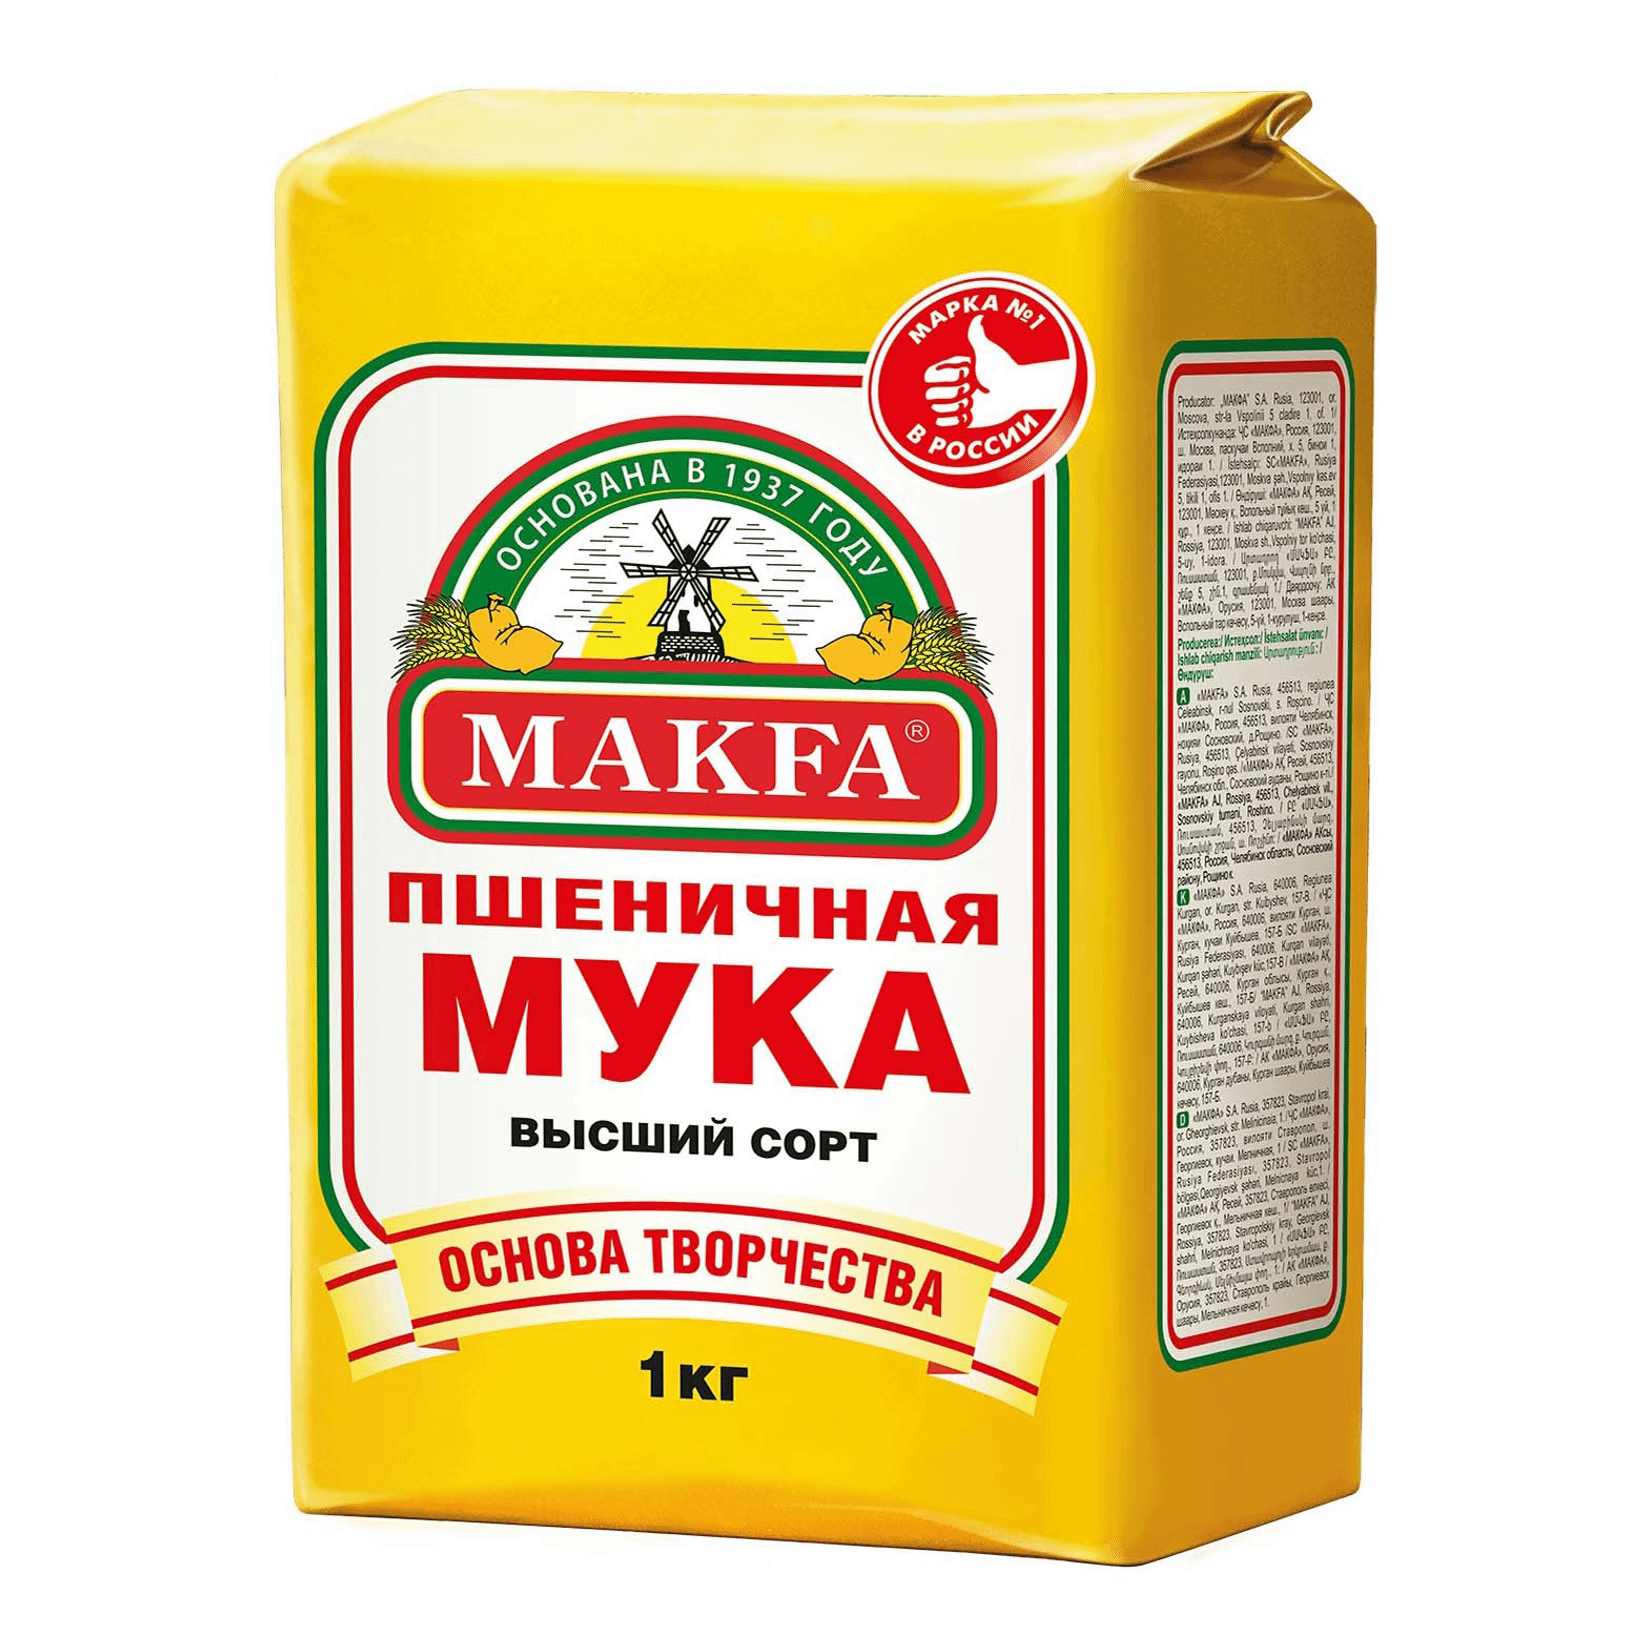 Мука купить в новосибирске. Мука Макфа пшеничная 2 кг. Мука пшеничная makfa, в/с, 2кг. Мука пшеничная высший сорт makfa 1 кг. Мука makfa пшеничная хлебопекарная Экстра 2 кг.